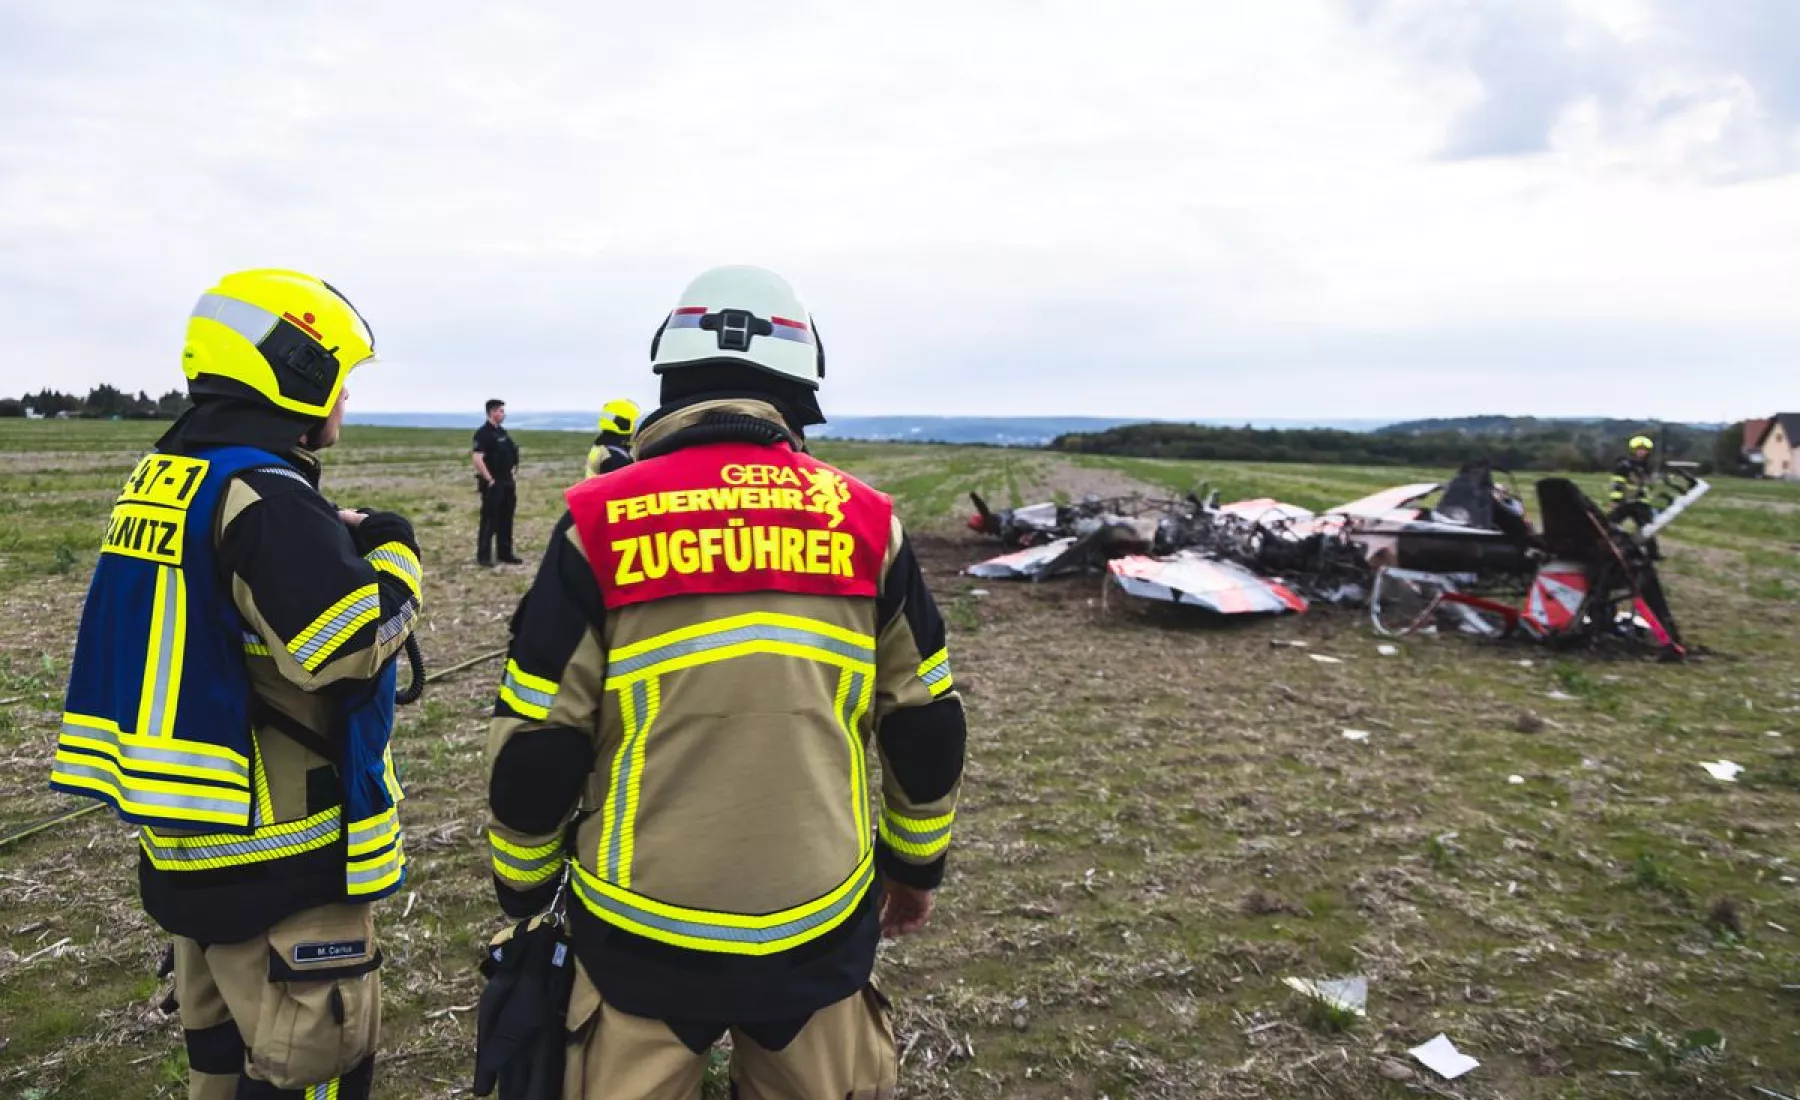 Thüringen, Gera-Leumnitz: Einsatzkräfte der Feuerwehr Gera sind an der Unglücksstelle an der zwei Kunstflieger kollidiert und abgestürzt sind